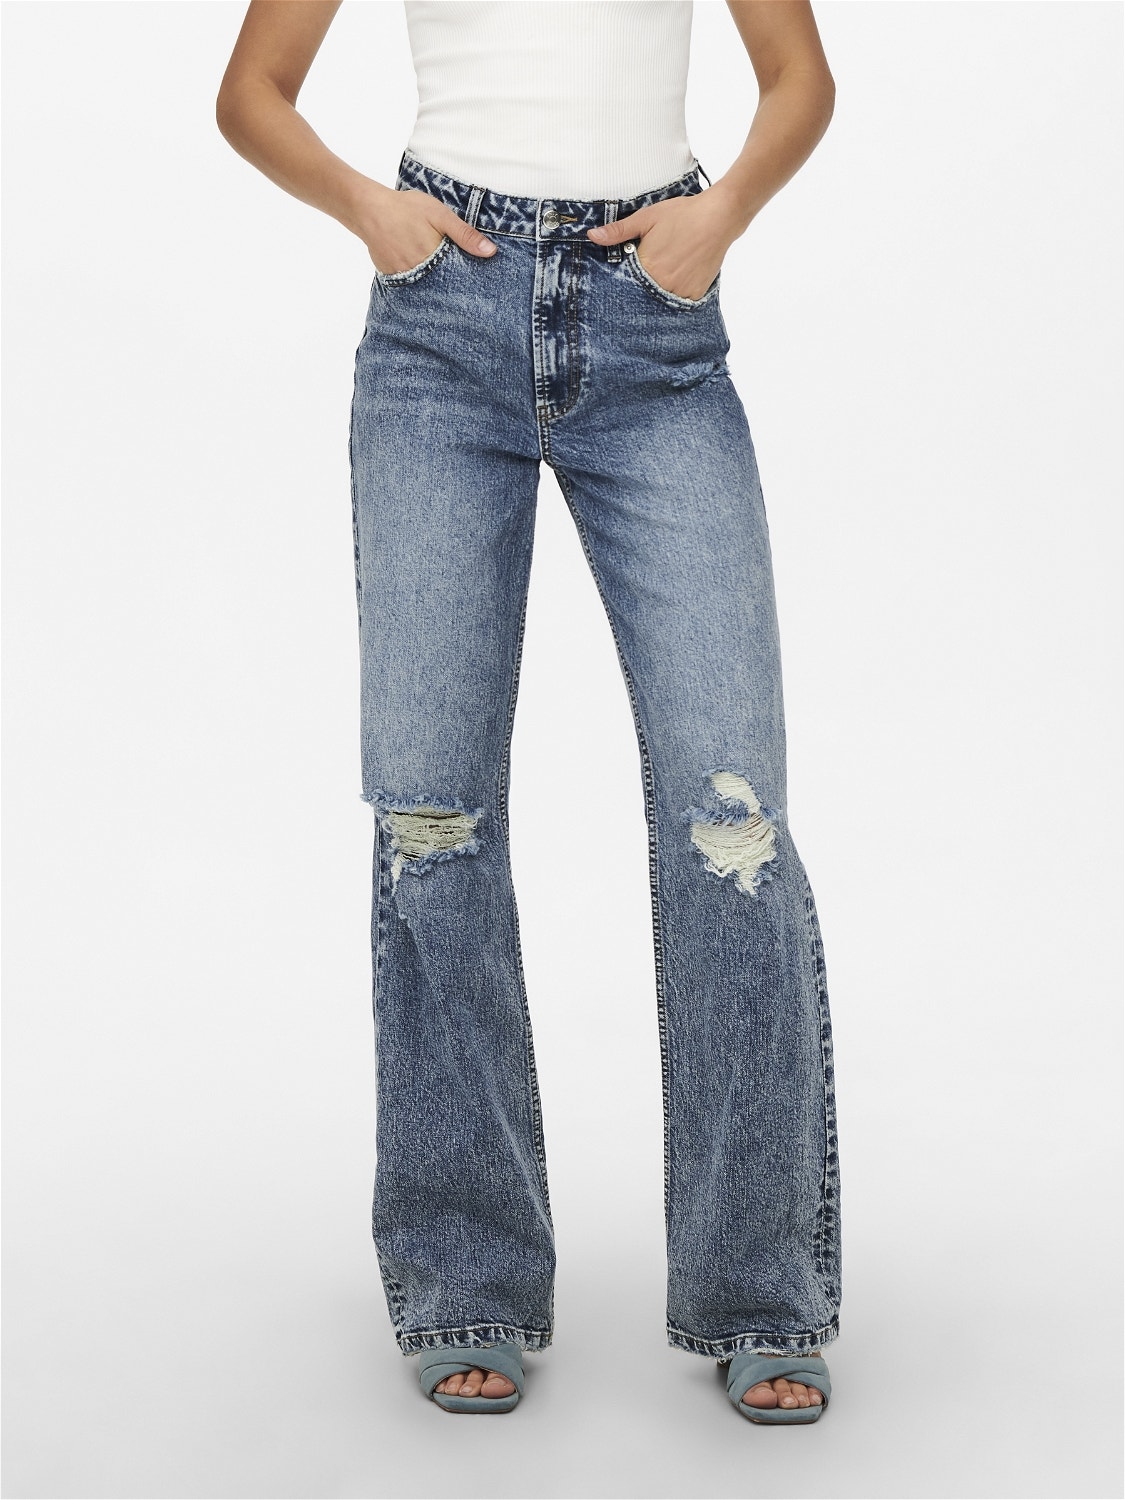 ONLY Jeans Straight Fit Taille haute Ourlé destroy -Medium Blue Denim - 15256490